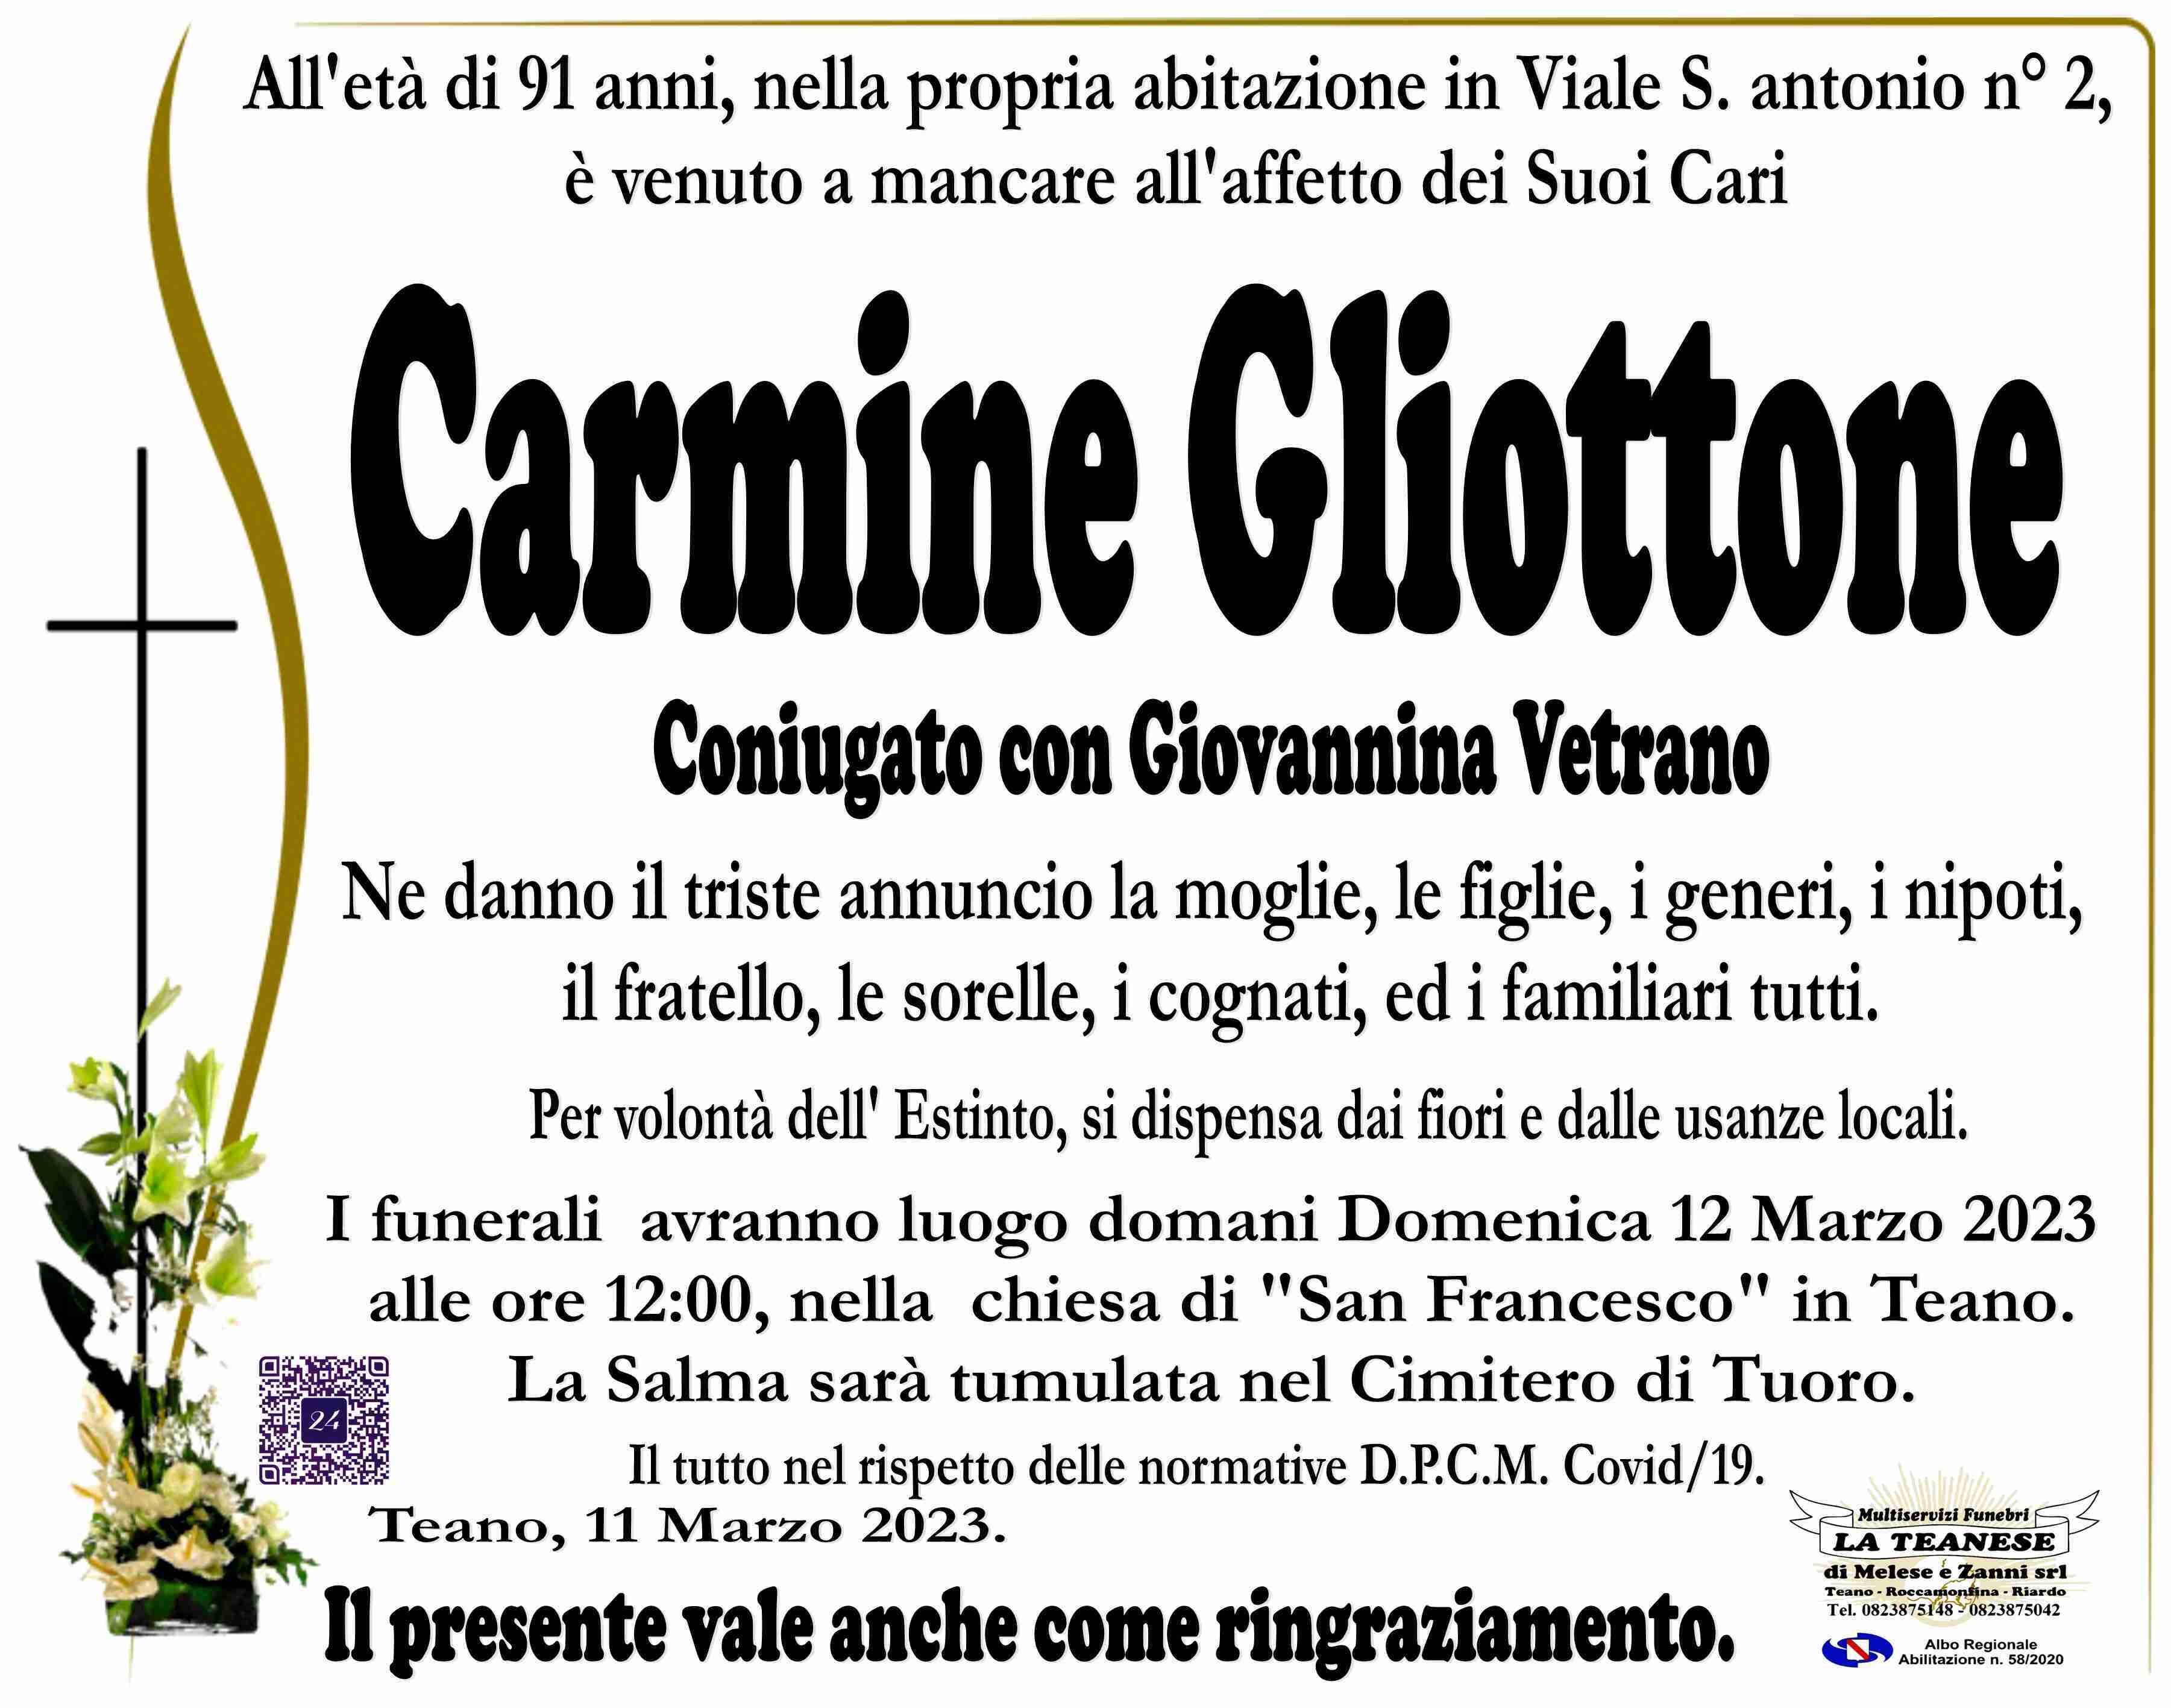 Carmine Gliottone